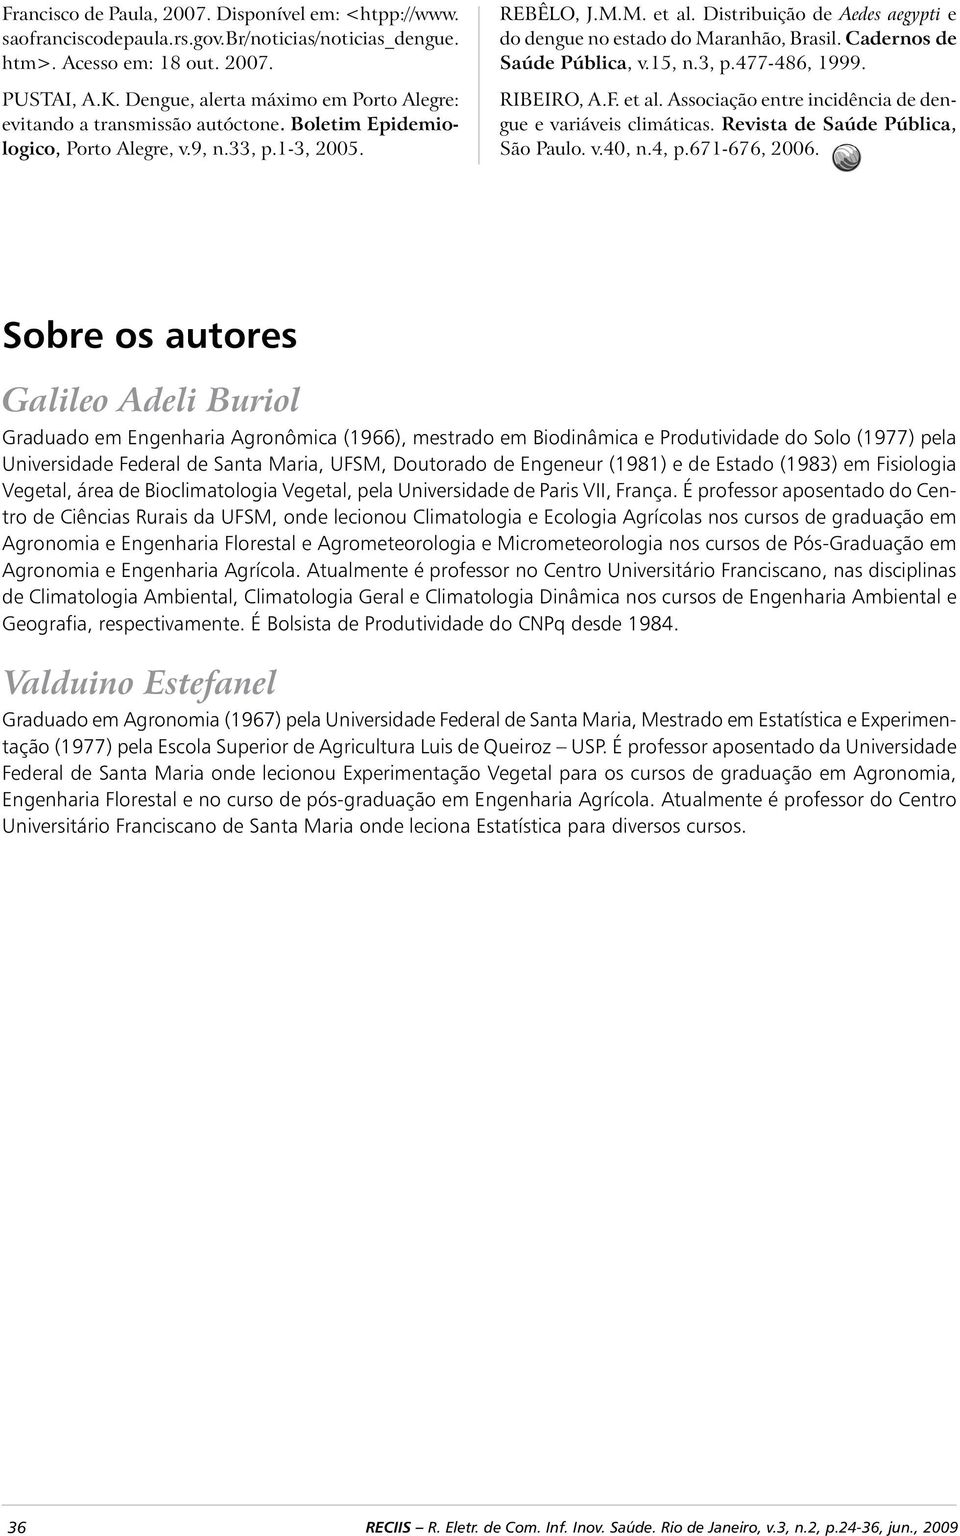 Distribuição de Aedes aegypti e do dengue no estado do Maranhão, Brasil. Cadernos de Saúde Pública, v.15, n.3, p.477-486, 1999. RIBEIRO, A.F. et al.